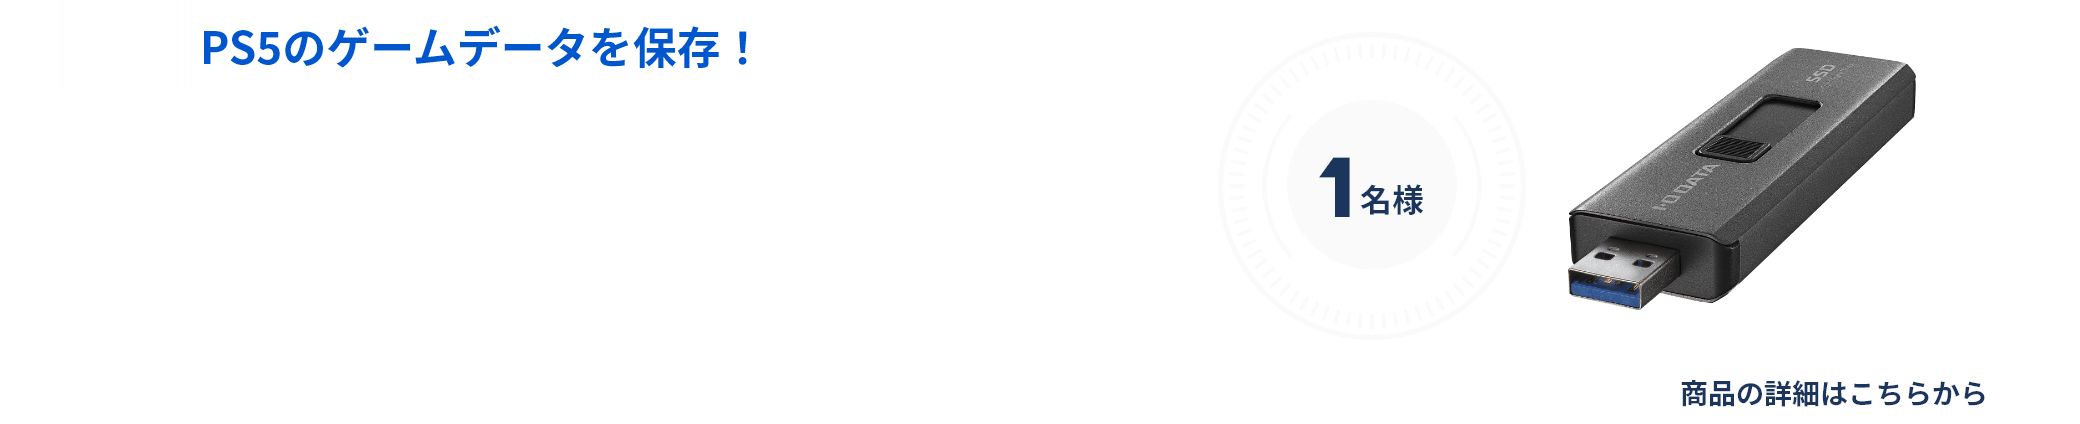 スティックSSD SSPE-USC1